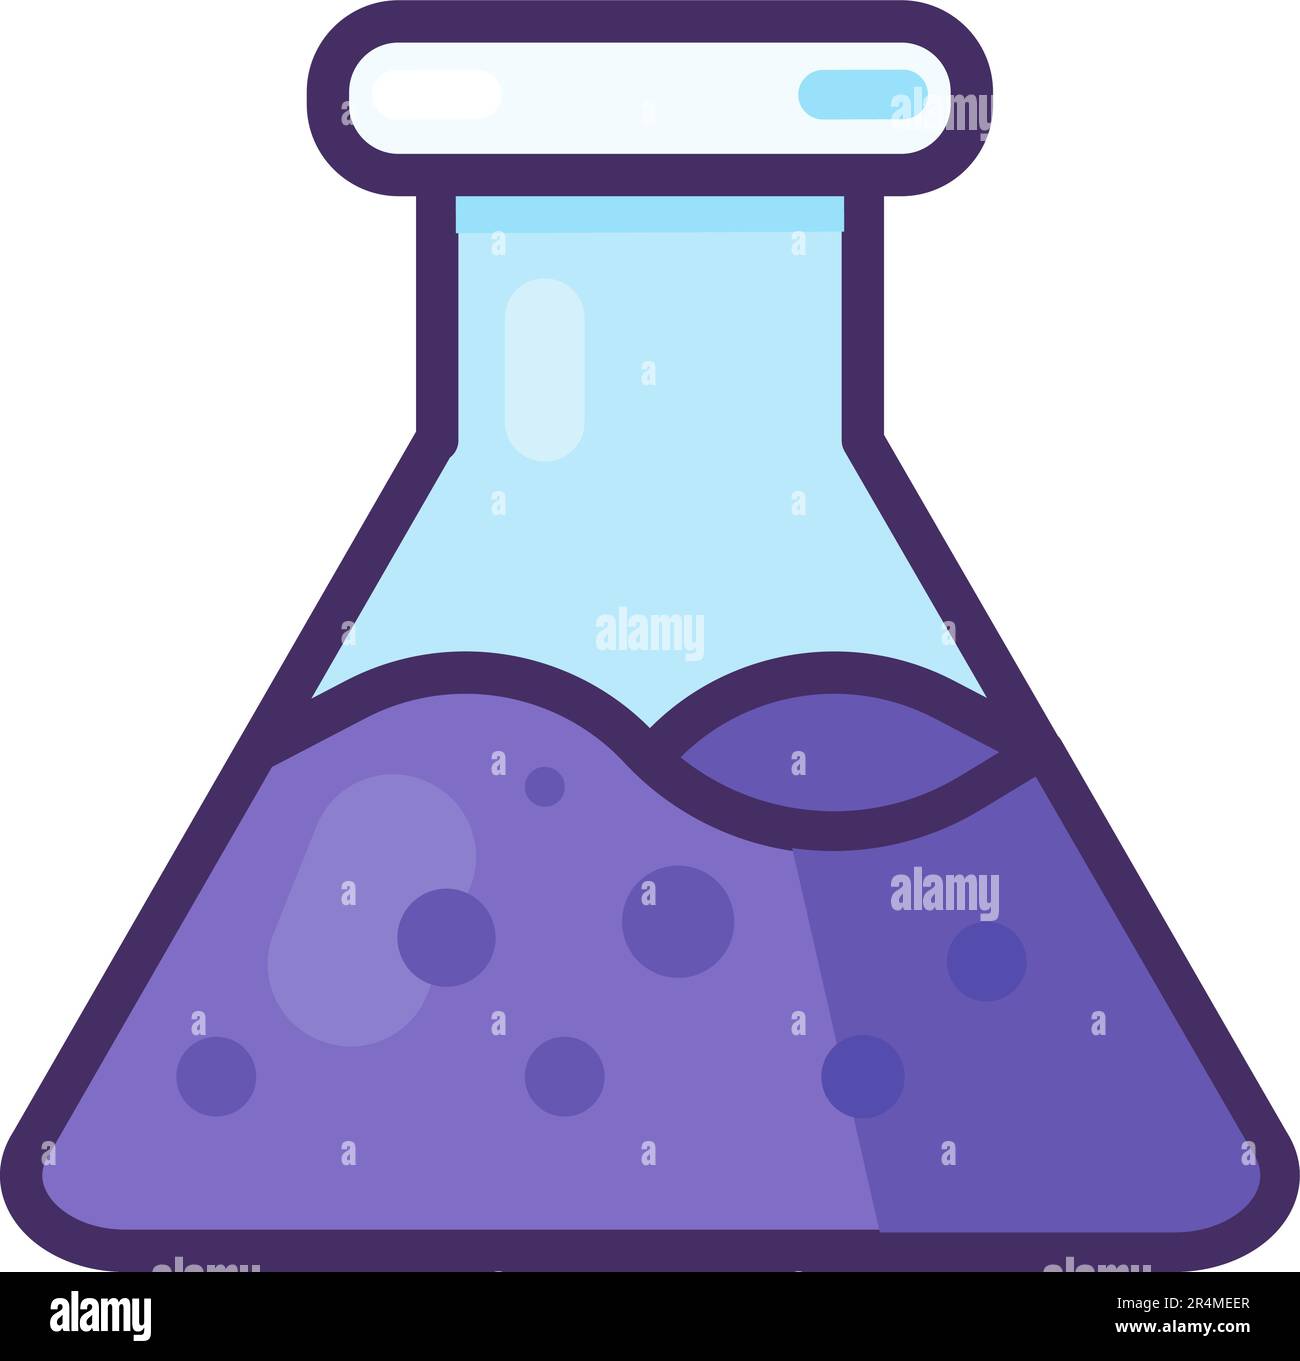 Icona di un matraccio da laboratorio in vetro. Sperimentare il recipiente conico con liquido chimico violetto all'interno. Condurre esperimenti e analisi in chimica. Semplice carto Illustrazione Vettoriale